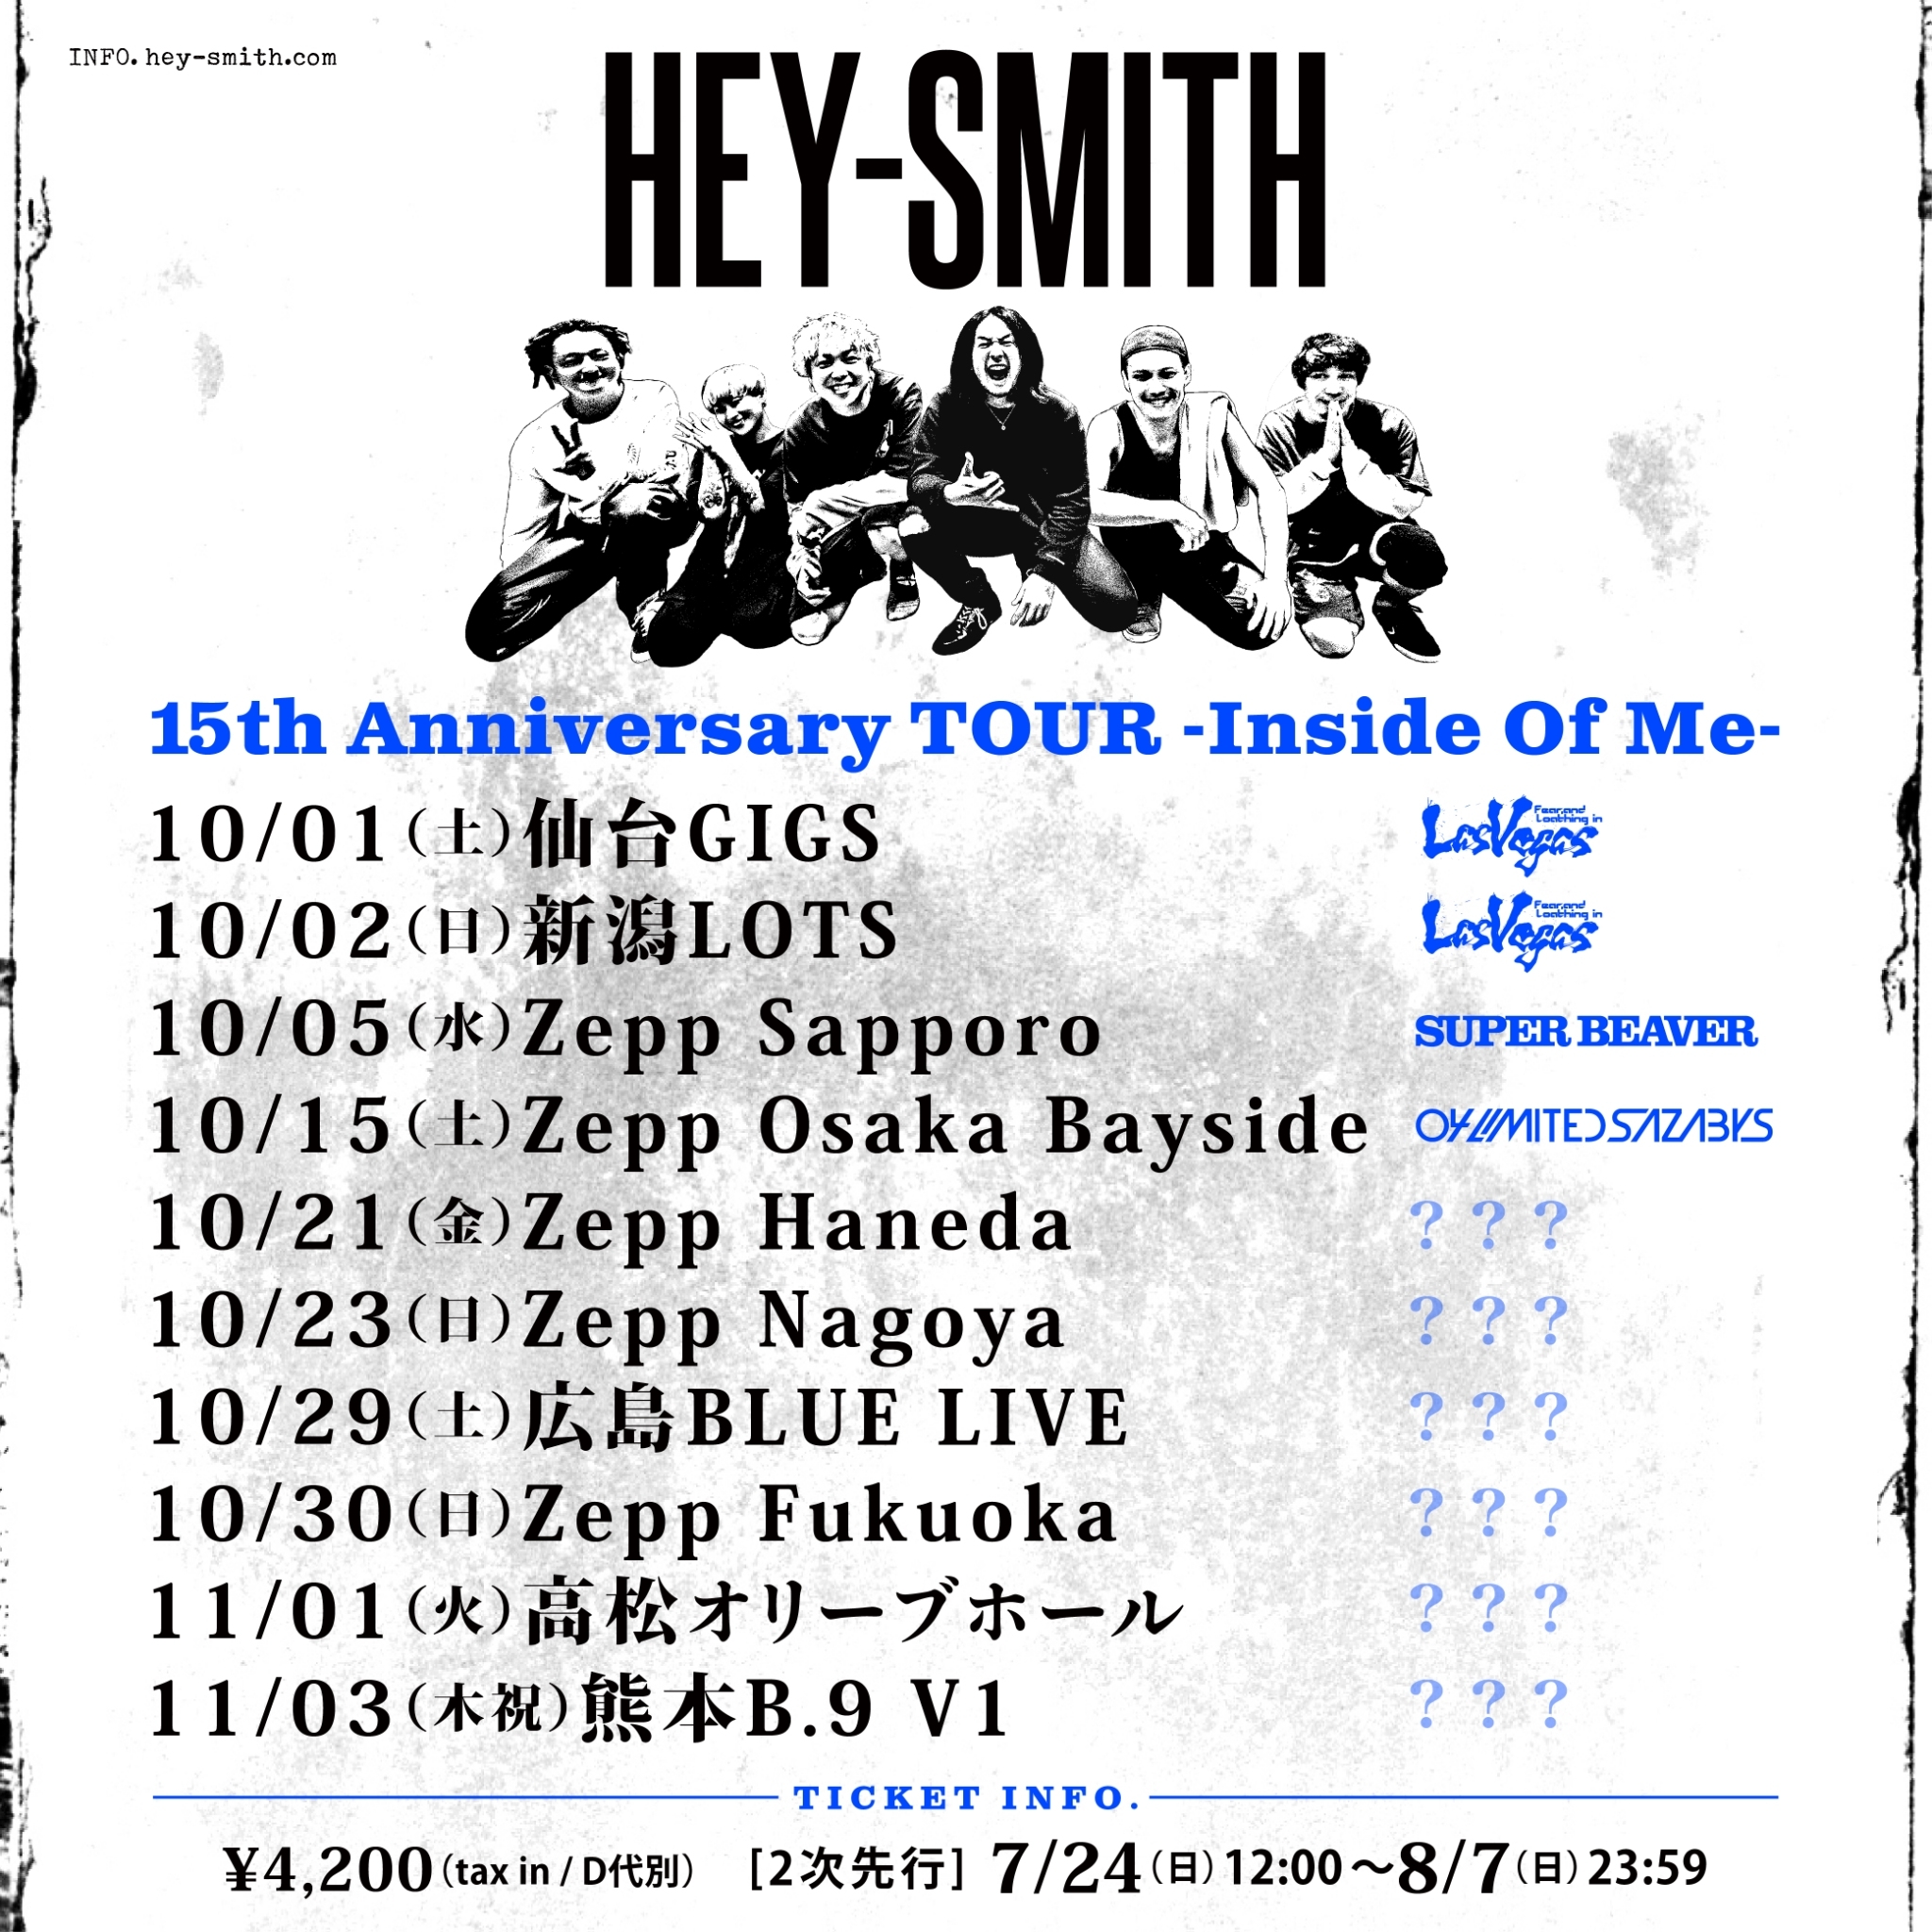 【大阪】HEY-SMITH "15th Anniversary TOUR -Inside Of Me-" (Zepp Osaka Bayside)